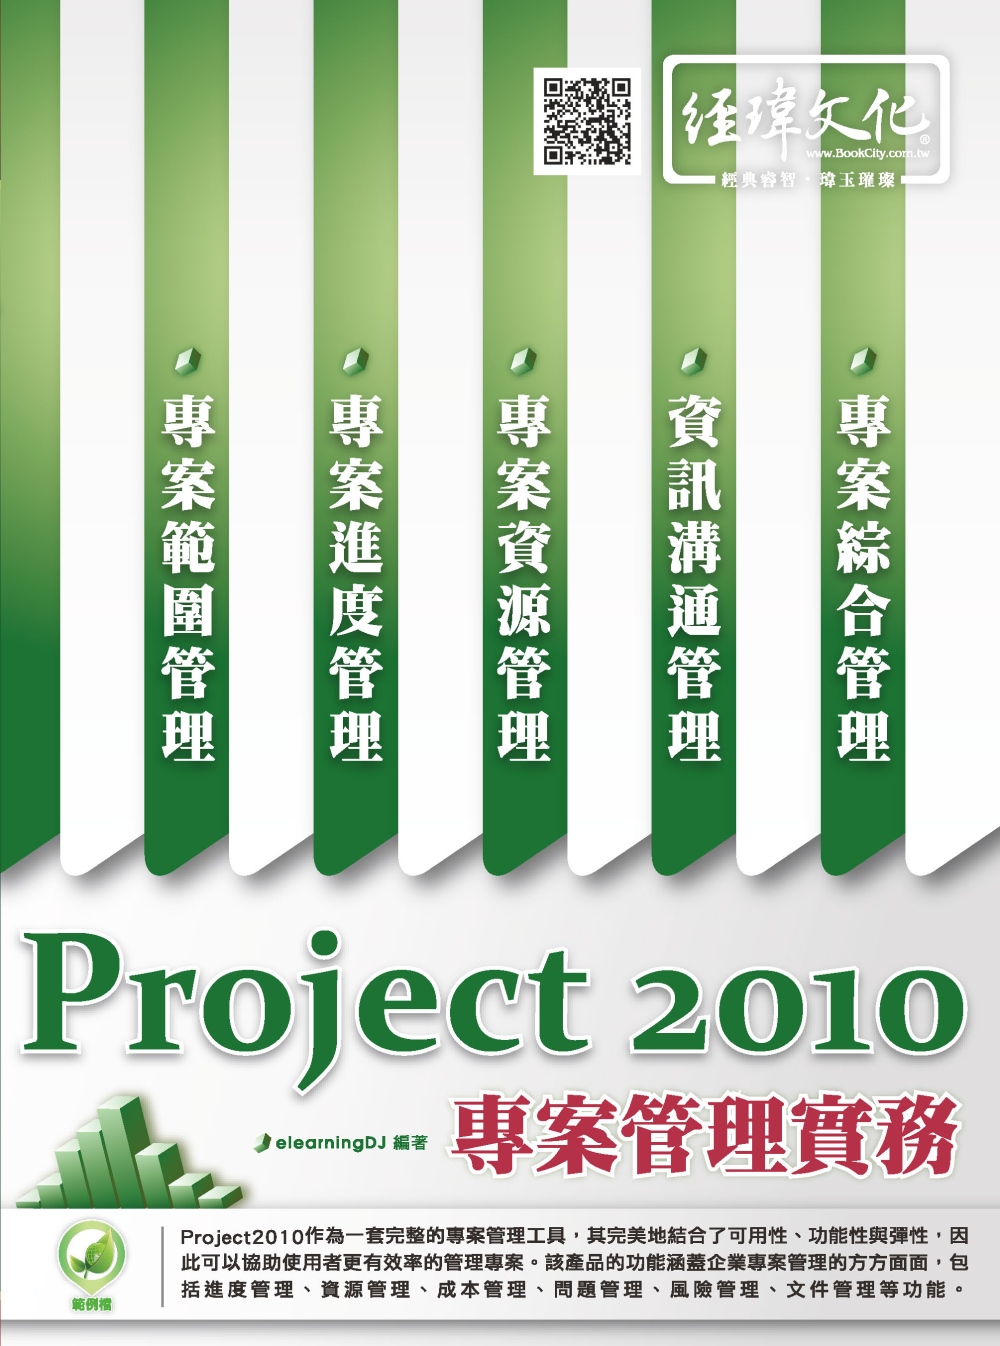 Project 2010 專案管理實務(附綠色範例檔)